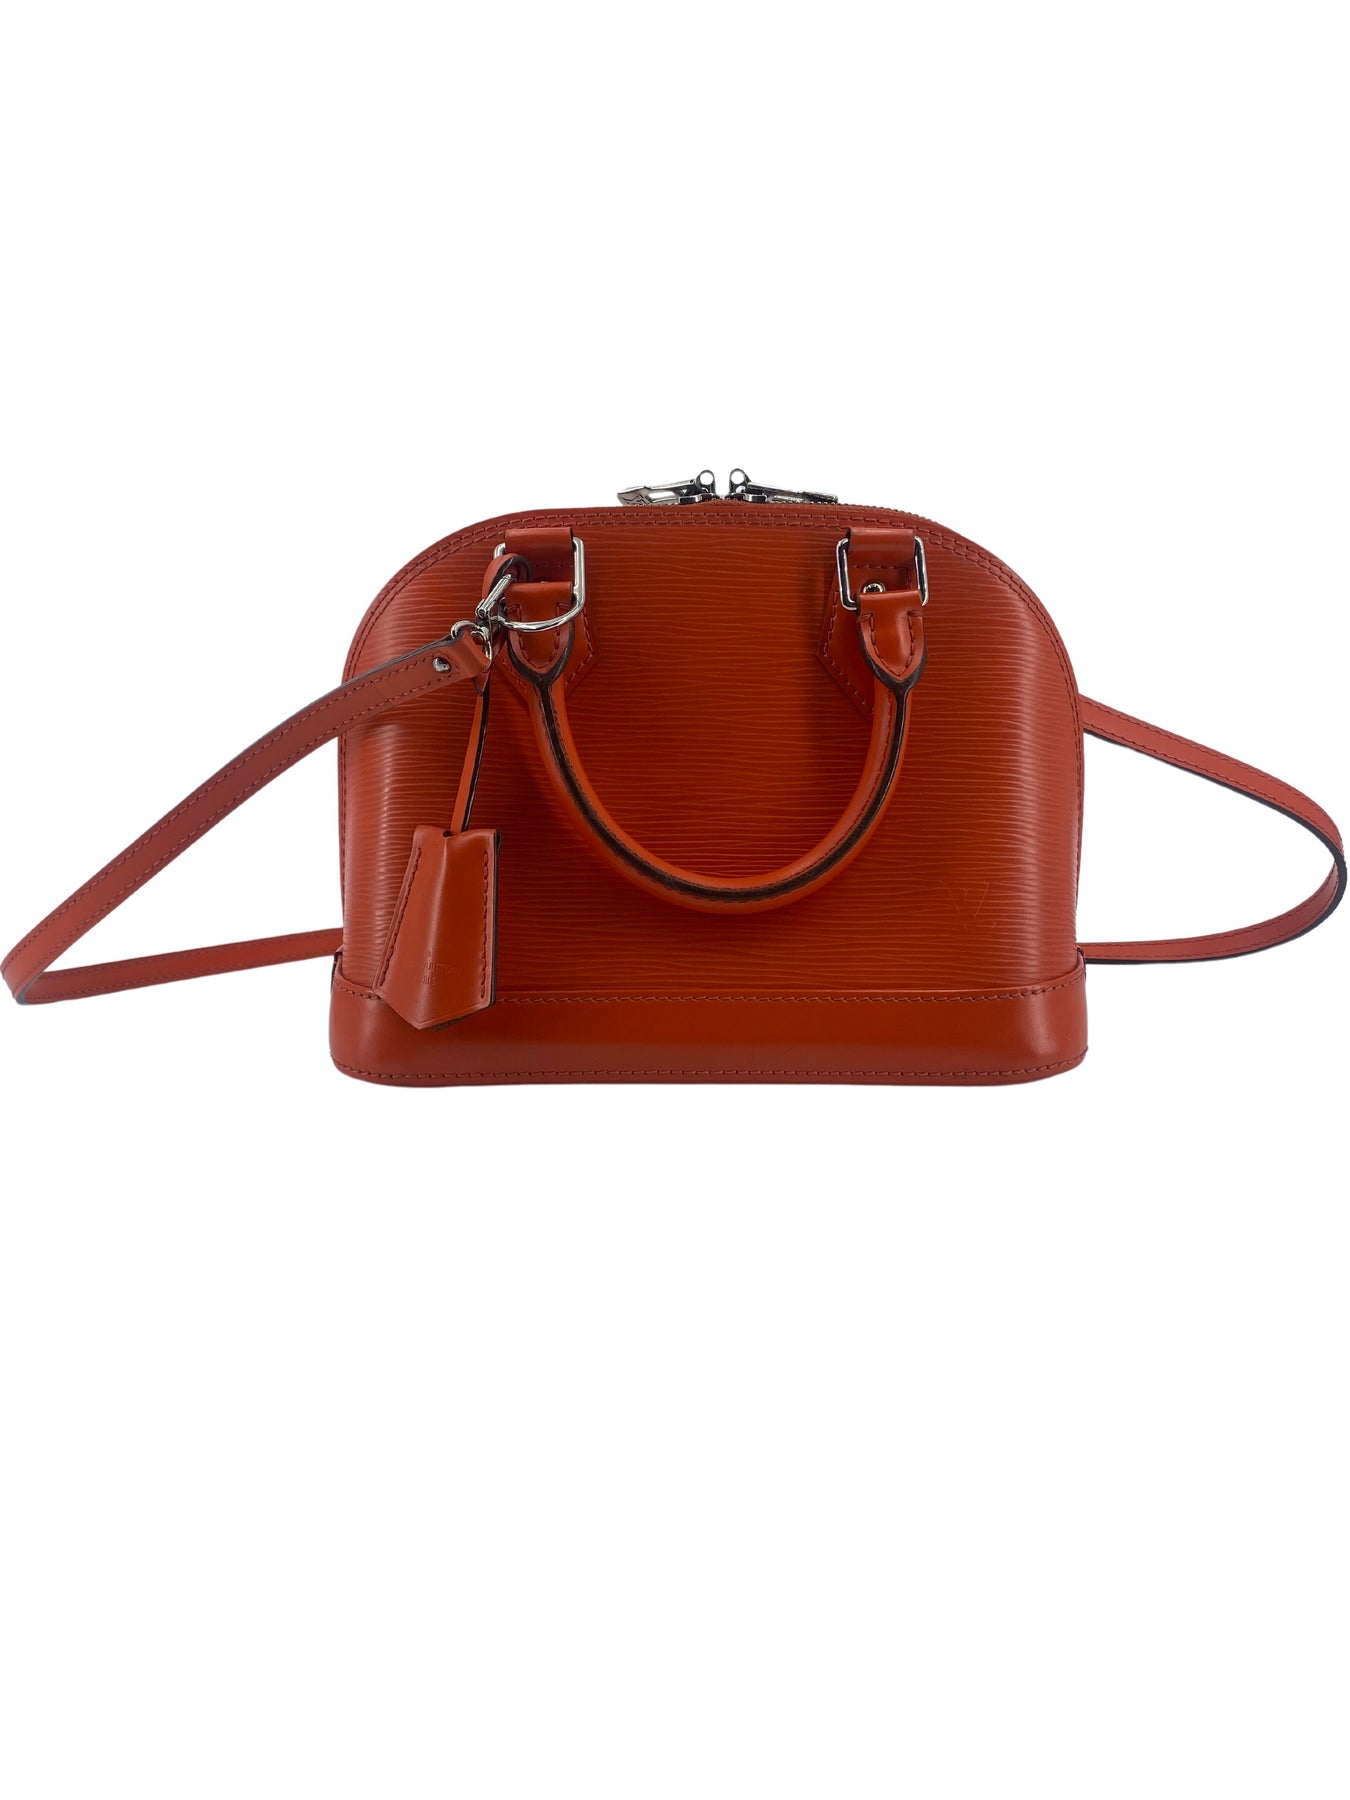 Louis Vuitton Alma Bb Orange Canvas Shoulder Bag (Pre-Owned)